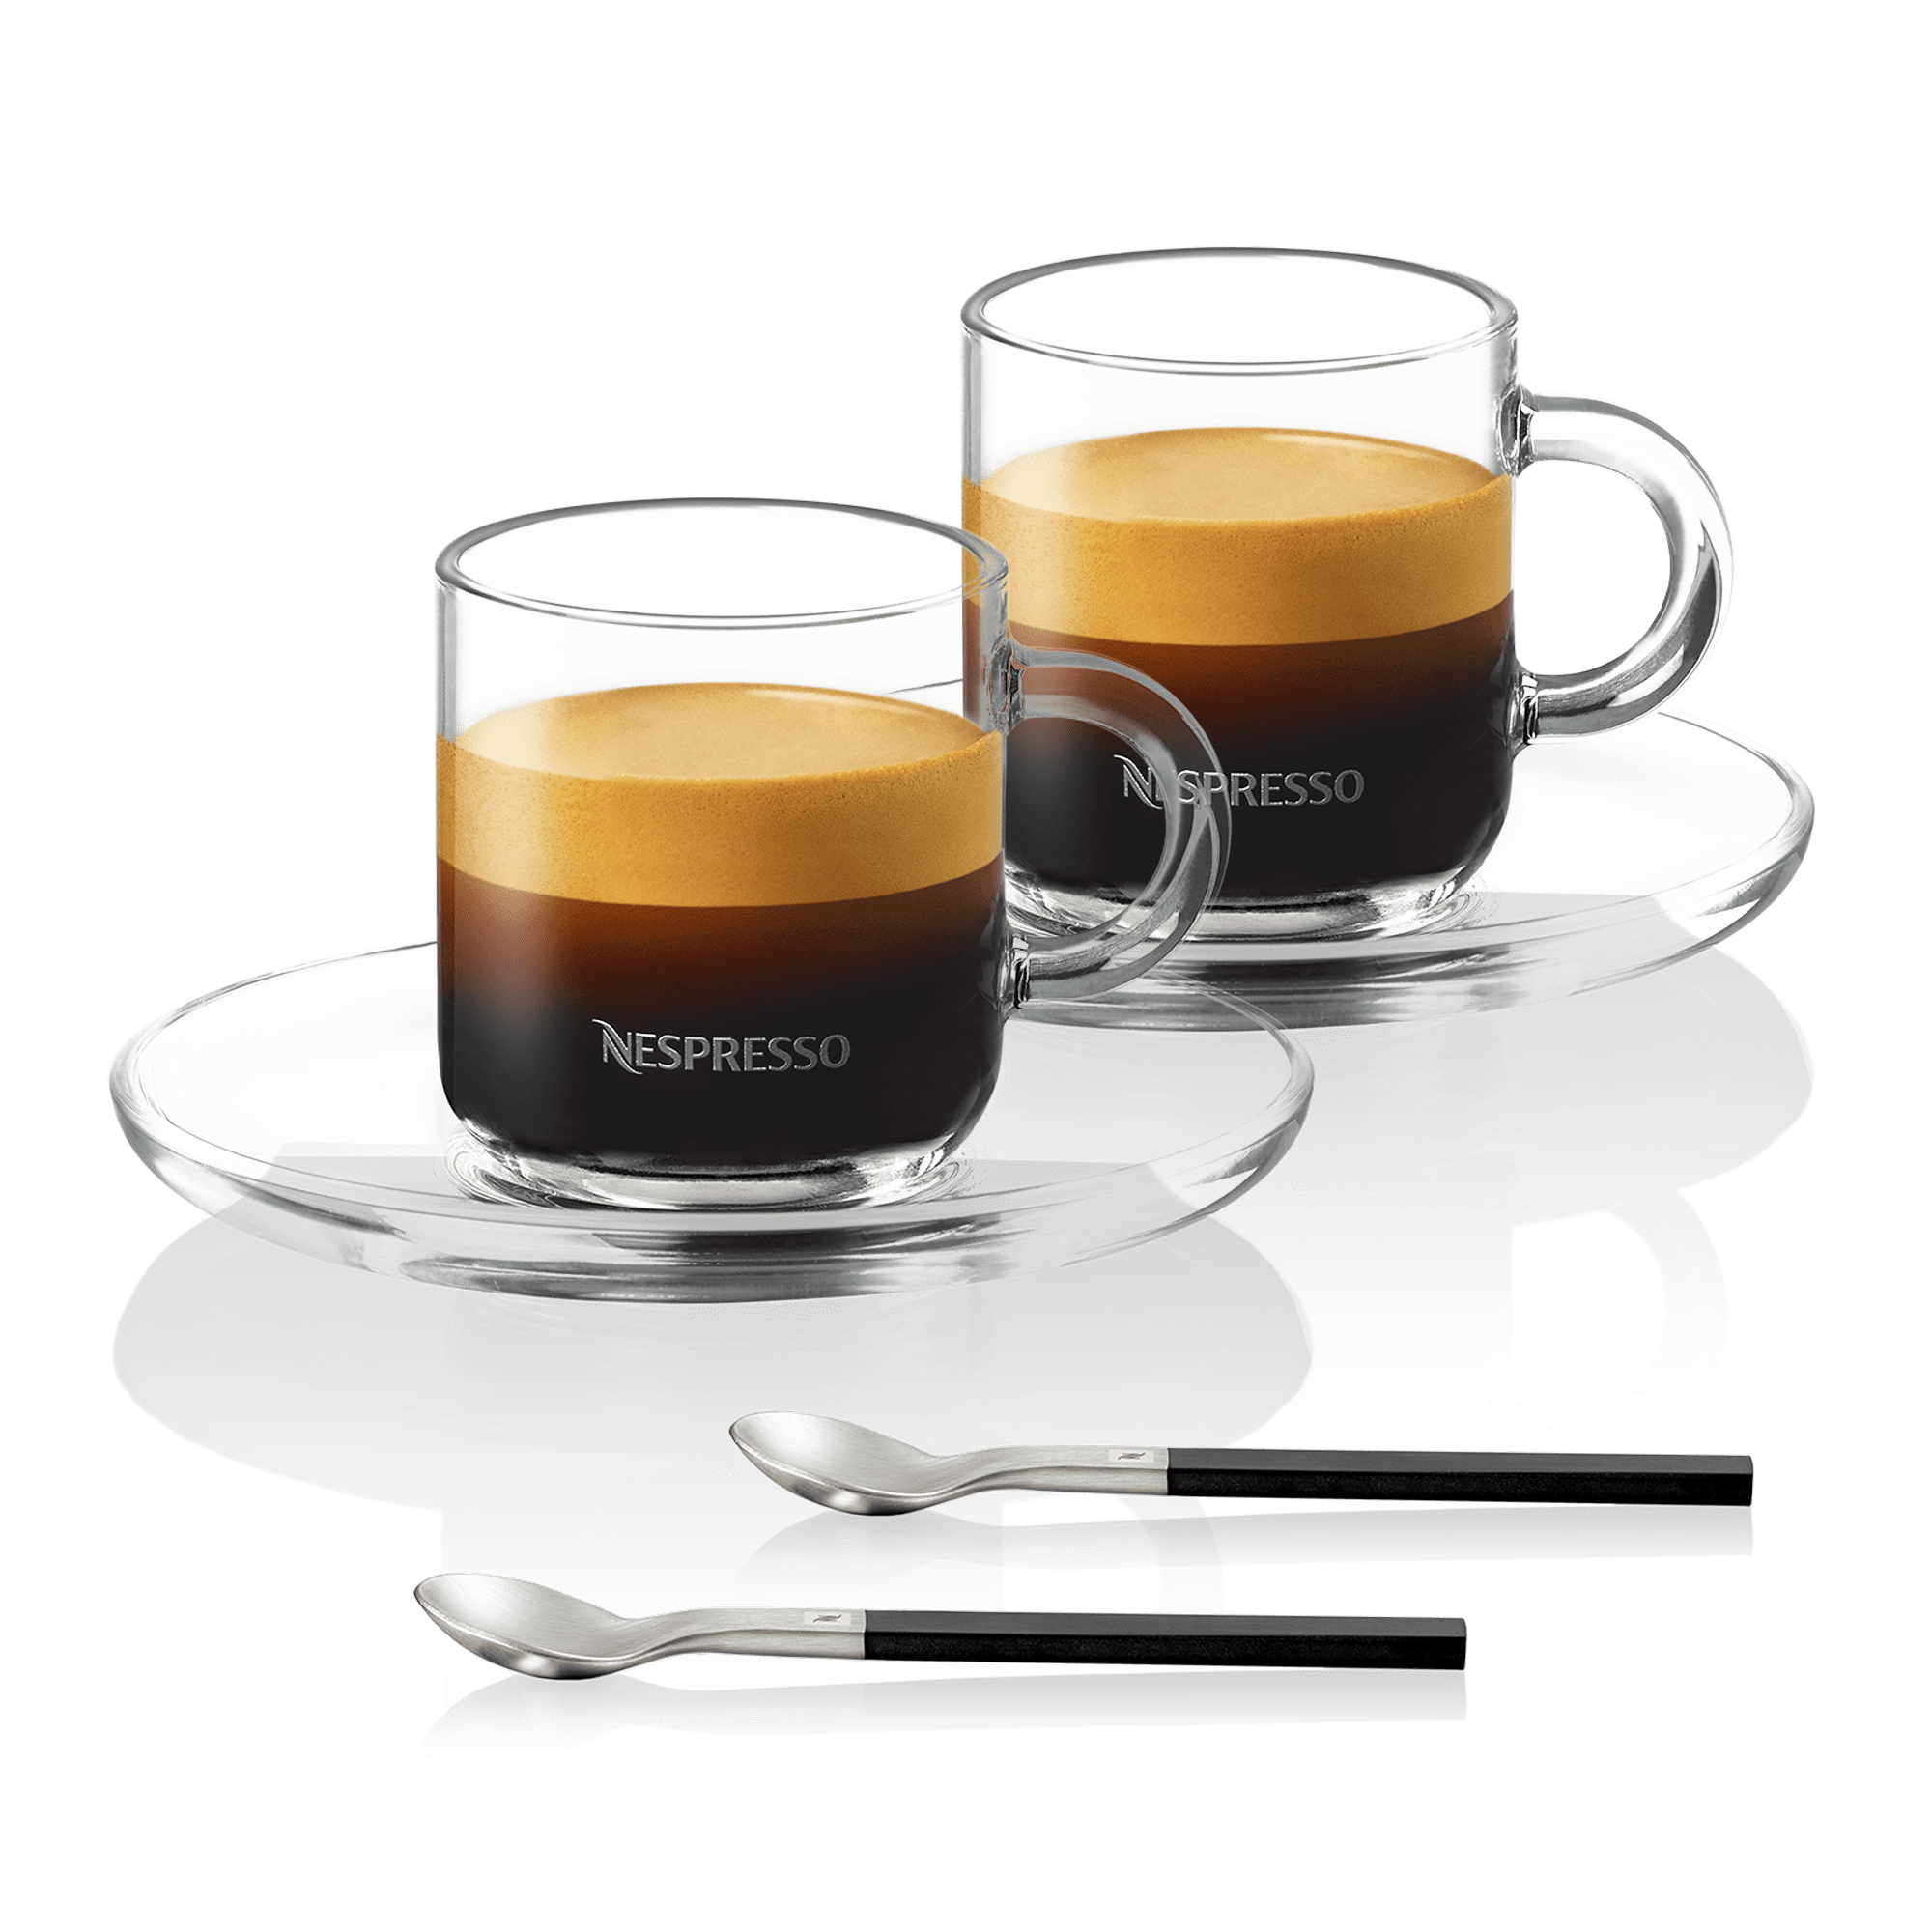 https://www.nespresso.com/ecom/medias/sys_master/public/14089991946270/Accessories-responsive-product-square-2000x2000px-Espresso-w-saucer-set.png